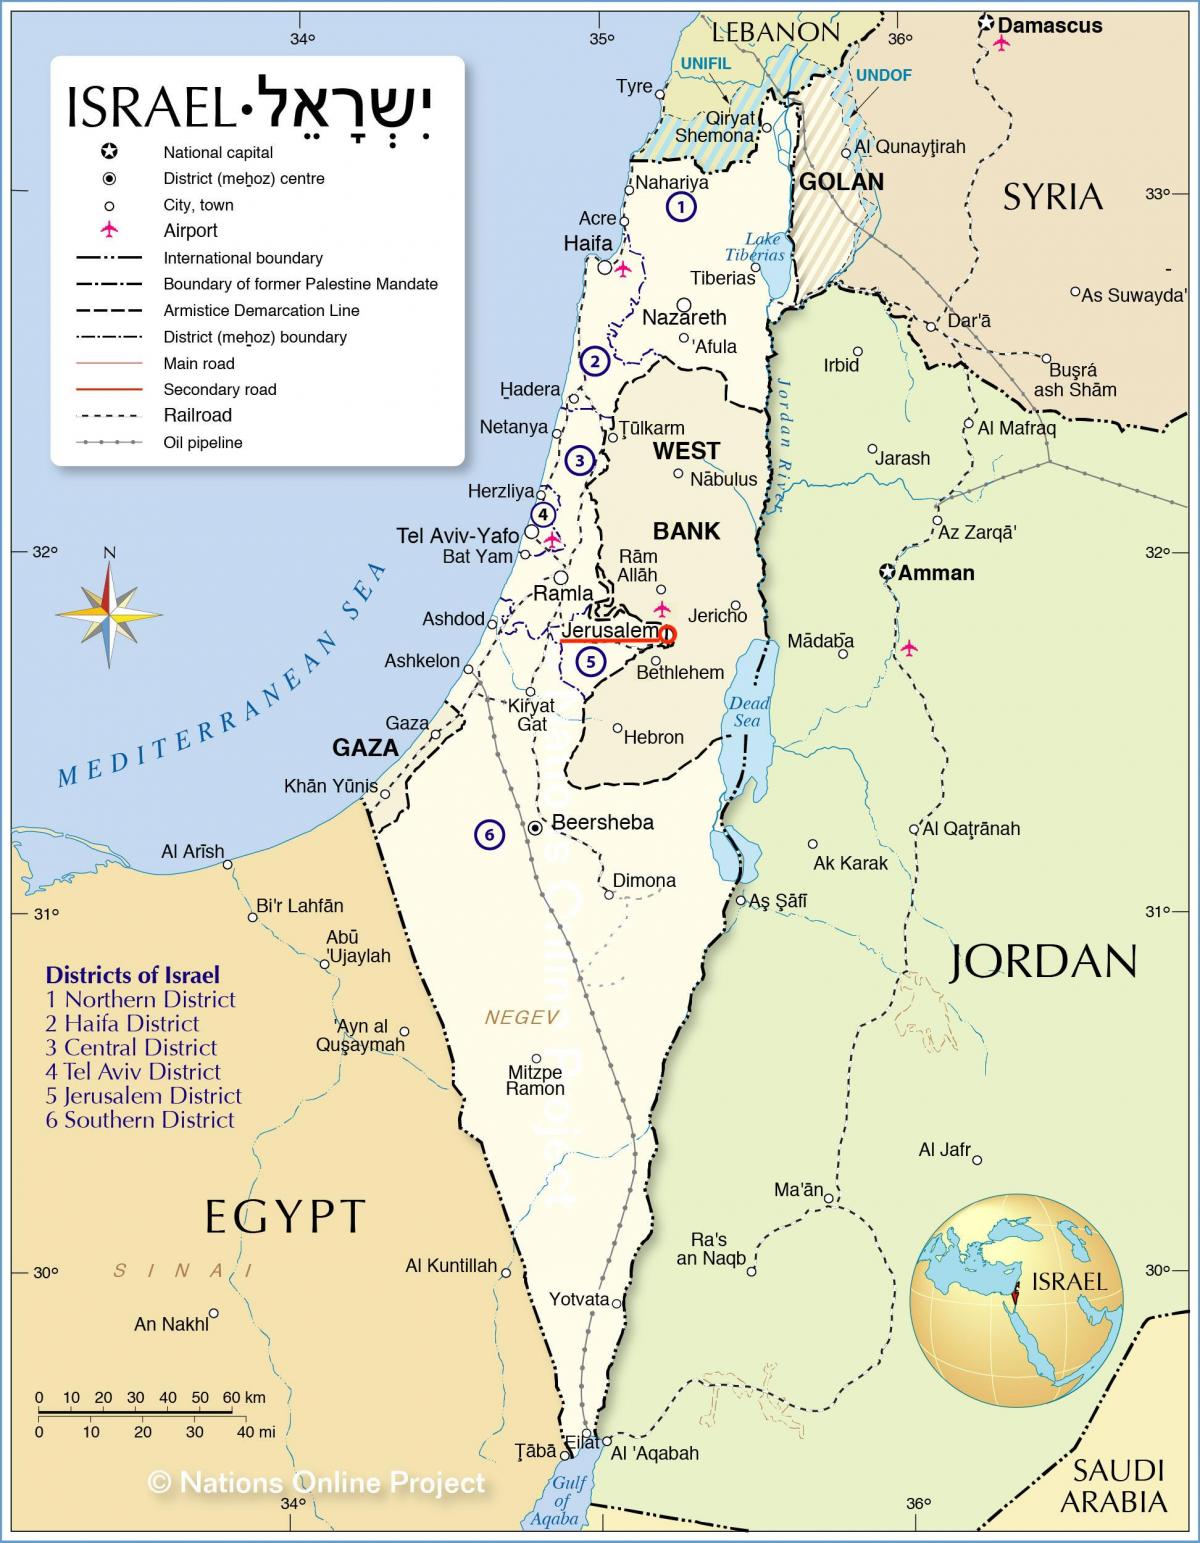 Jeruzalem op de Israëlische kaart